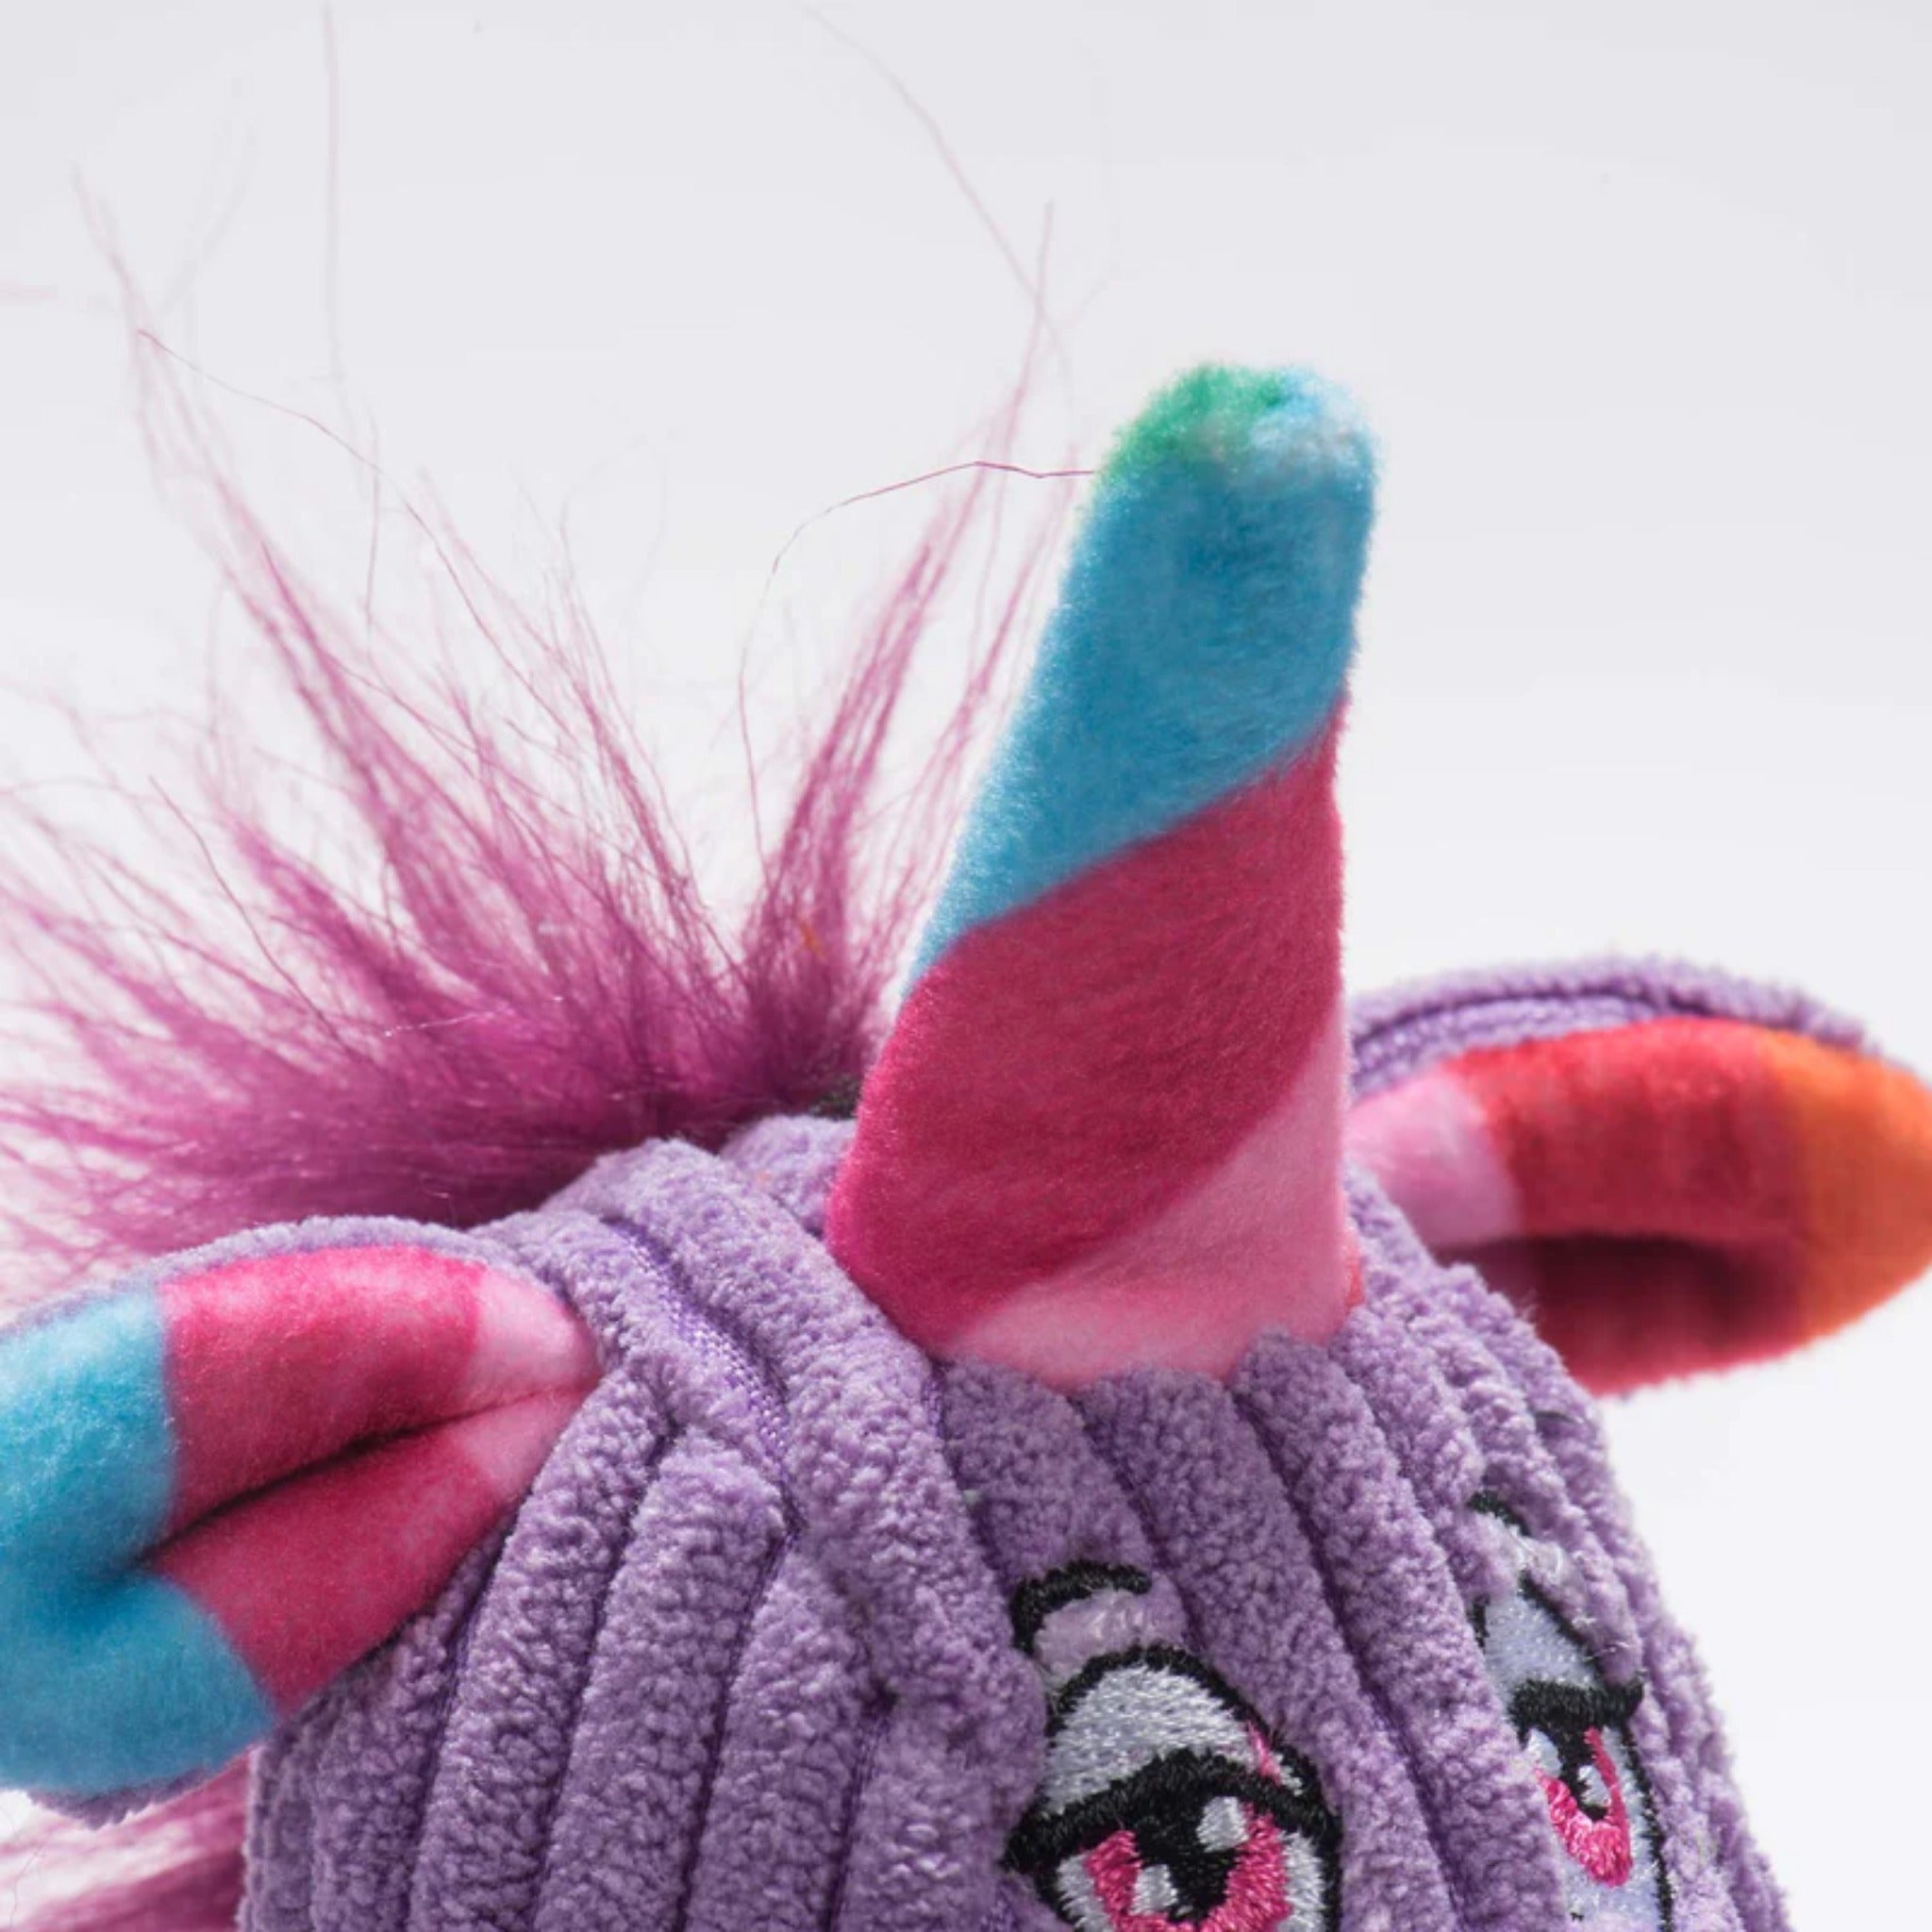 Hugglehounds Rainbow Unicorn Knottie, Hundespielzeug - Woofshack